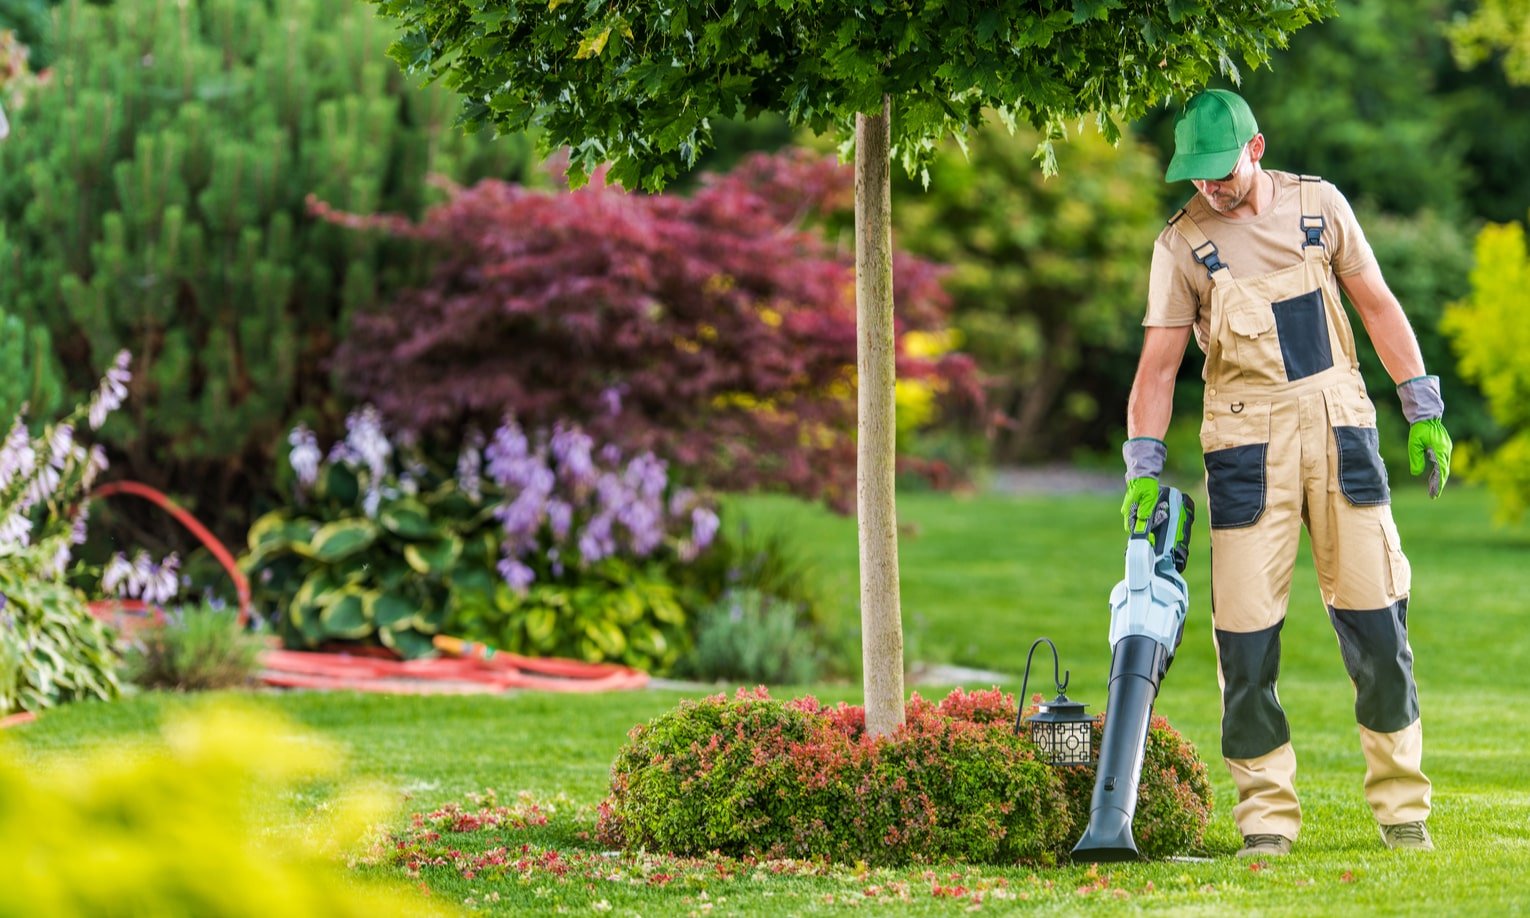 садовник использует ручную воздуходувку для уборки листьев